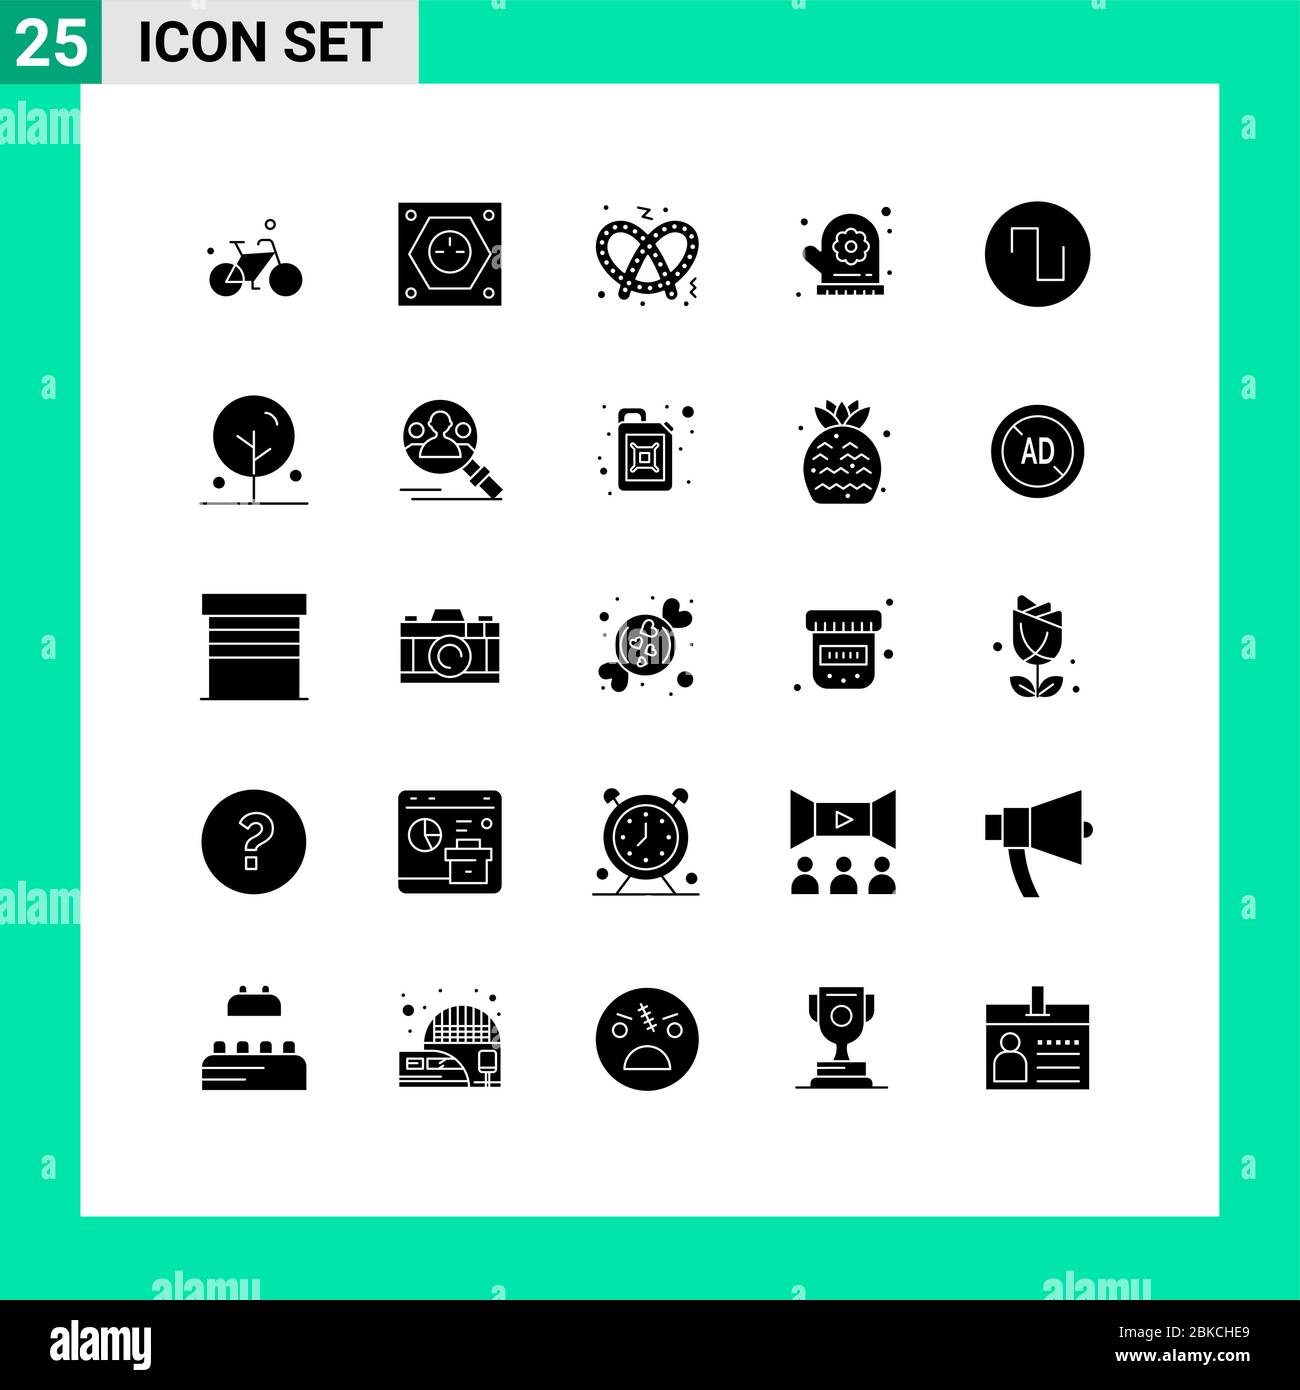 25 interfaccia utente Solid Glyph pacchetto di segni moderni e simboli di onda, suono, presa, sauna, forno MITT elementi di disegno vettoriale editabili Illustrazione Vettoriale